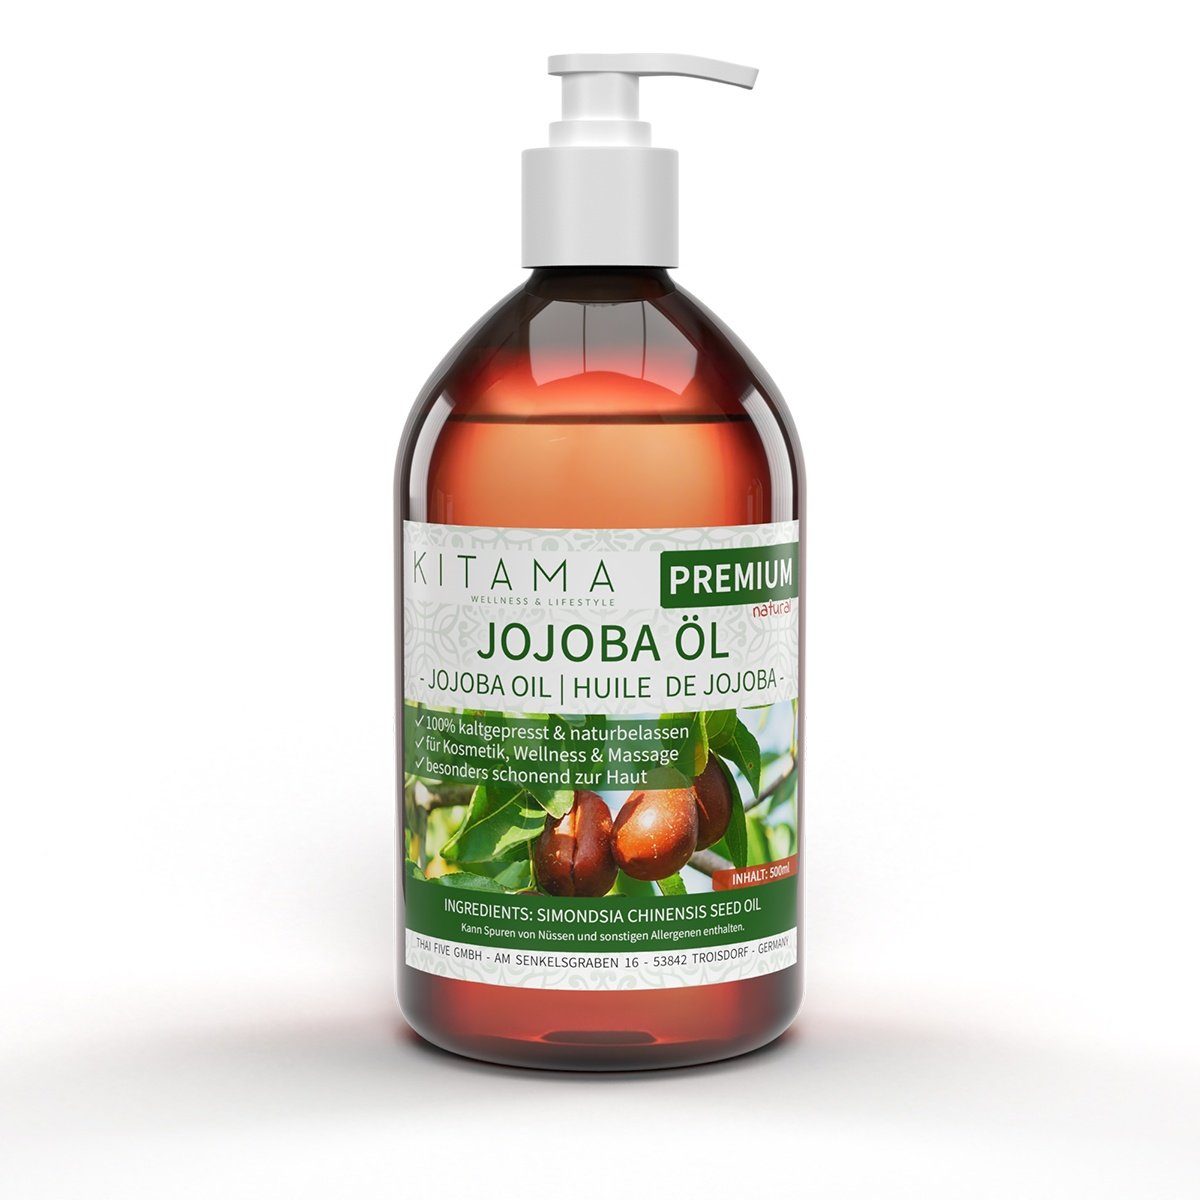 Kitama Körperöl Jojobaöl Pflege-Öl Pflege-Öl Baby-Öl sanftes - naturbelassen 500ml, kaltgepresst